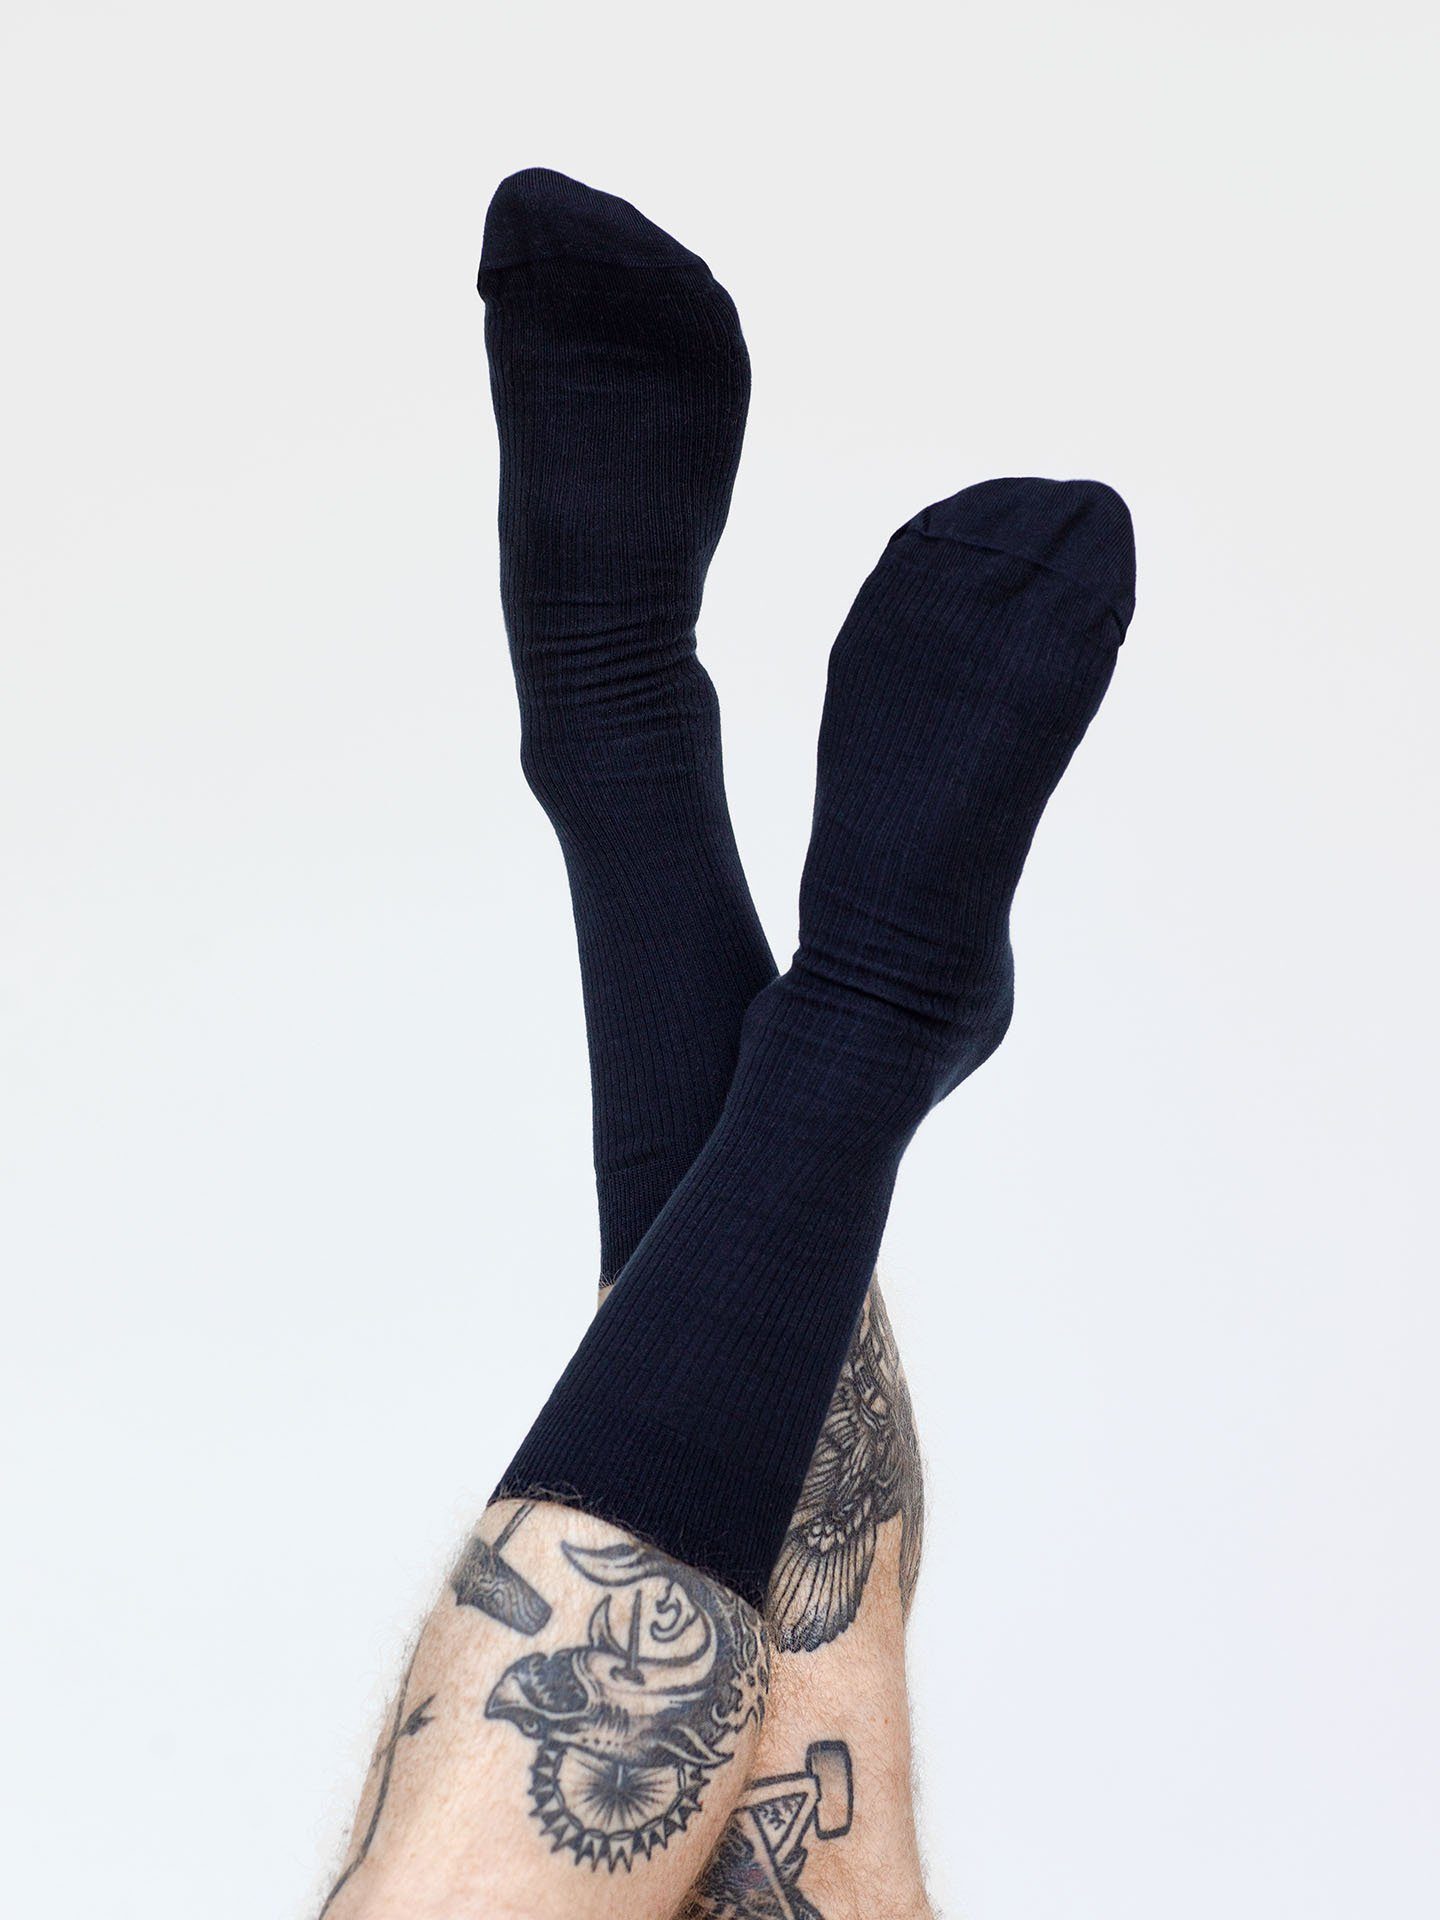 Textil Casual Cotton Erlich Socken (3-Paar) 3er dunkelblau im Pack Gerippte Socken